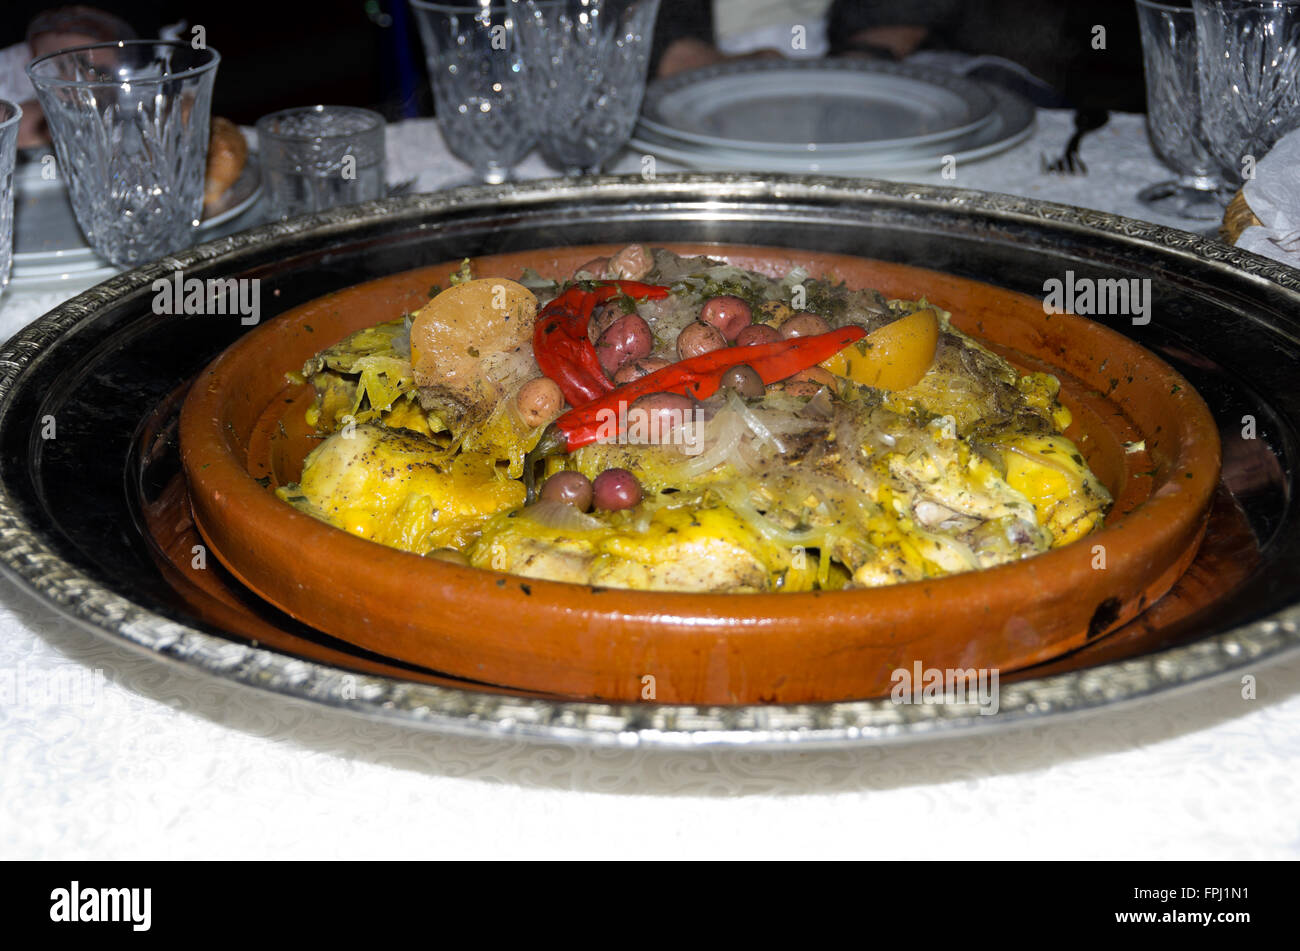 Marokkanisches Essen serviert traditionelle Darstellung der marokkanischen Kultur. Stockfoto